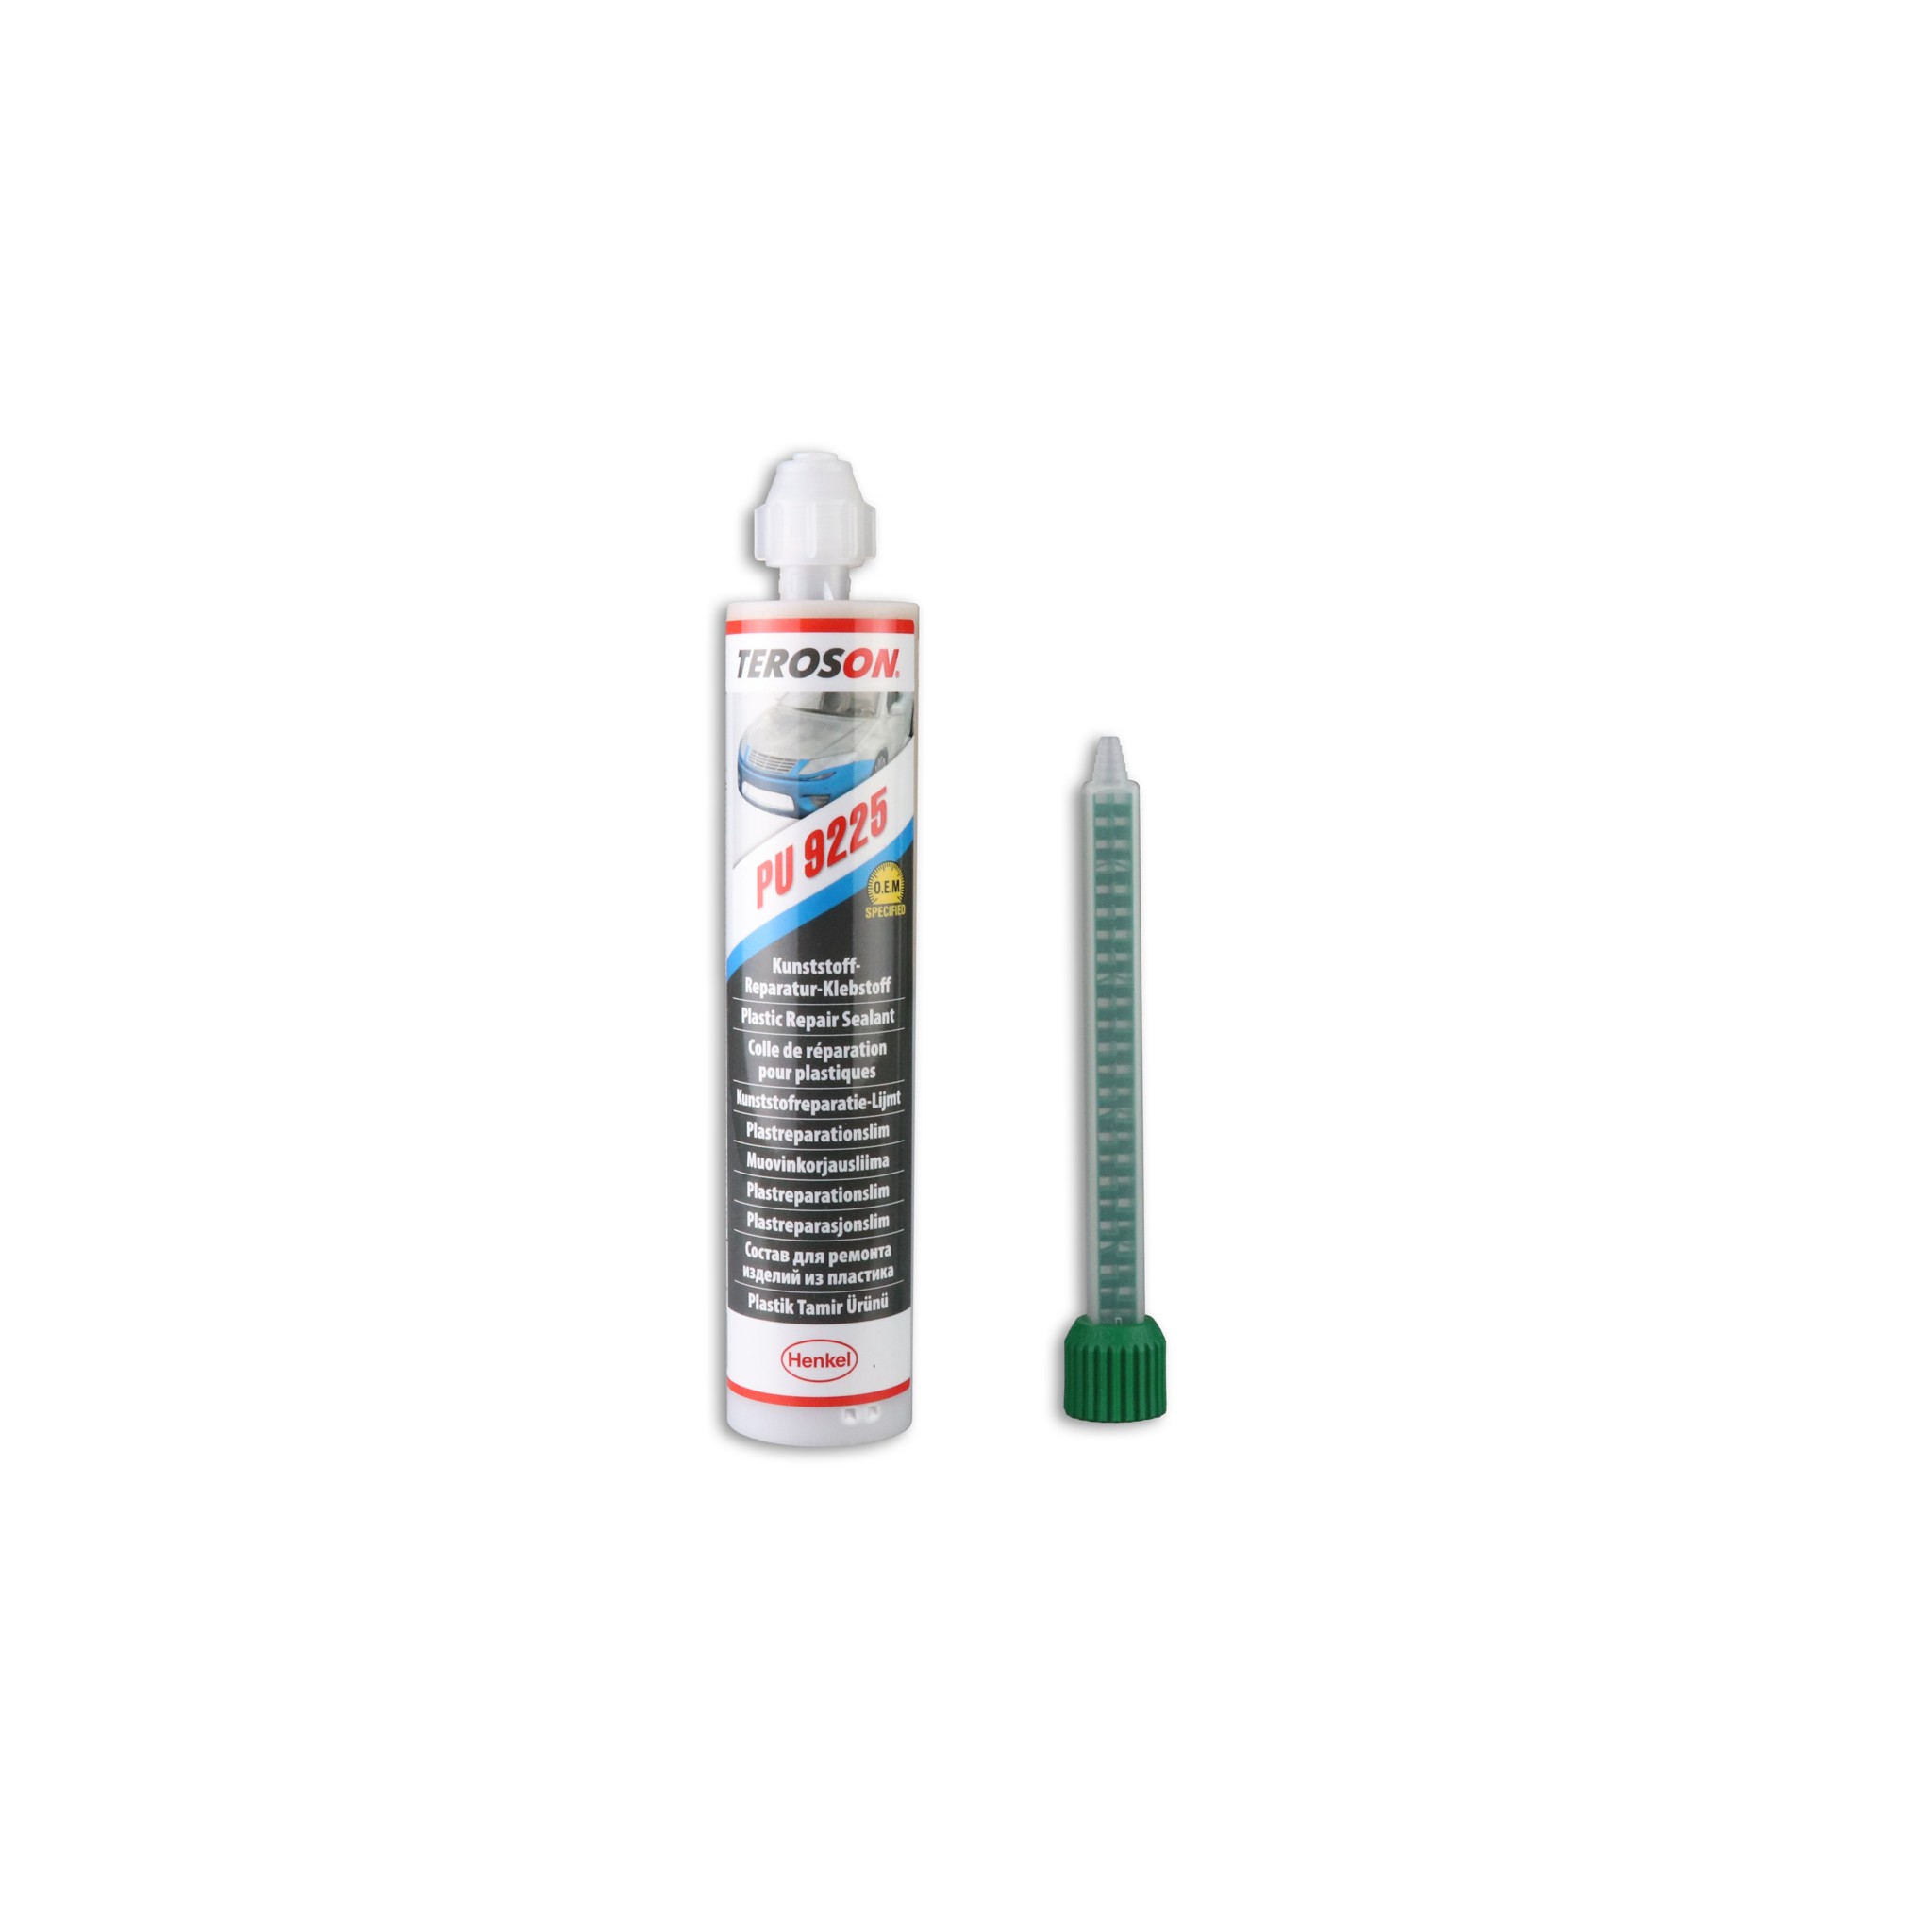 TEROSON PU 9225 – plastic repair adhesive - Henkel Adhesives